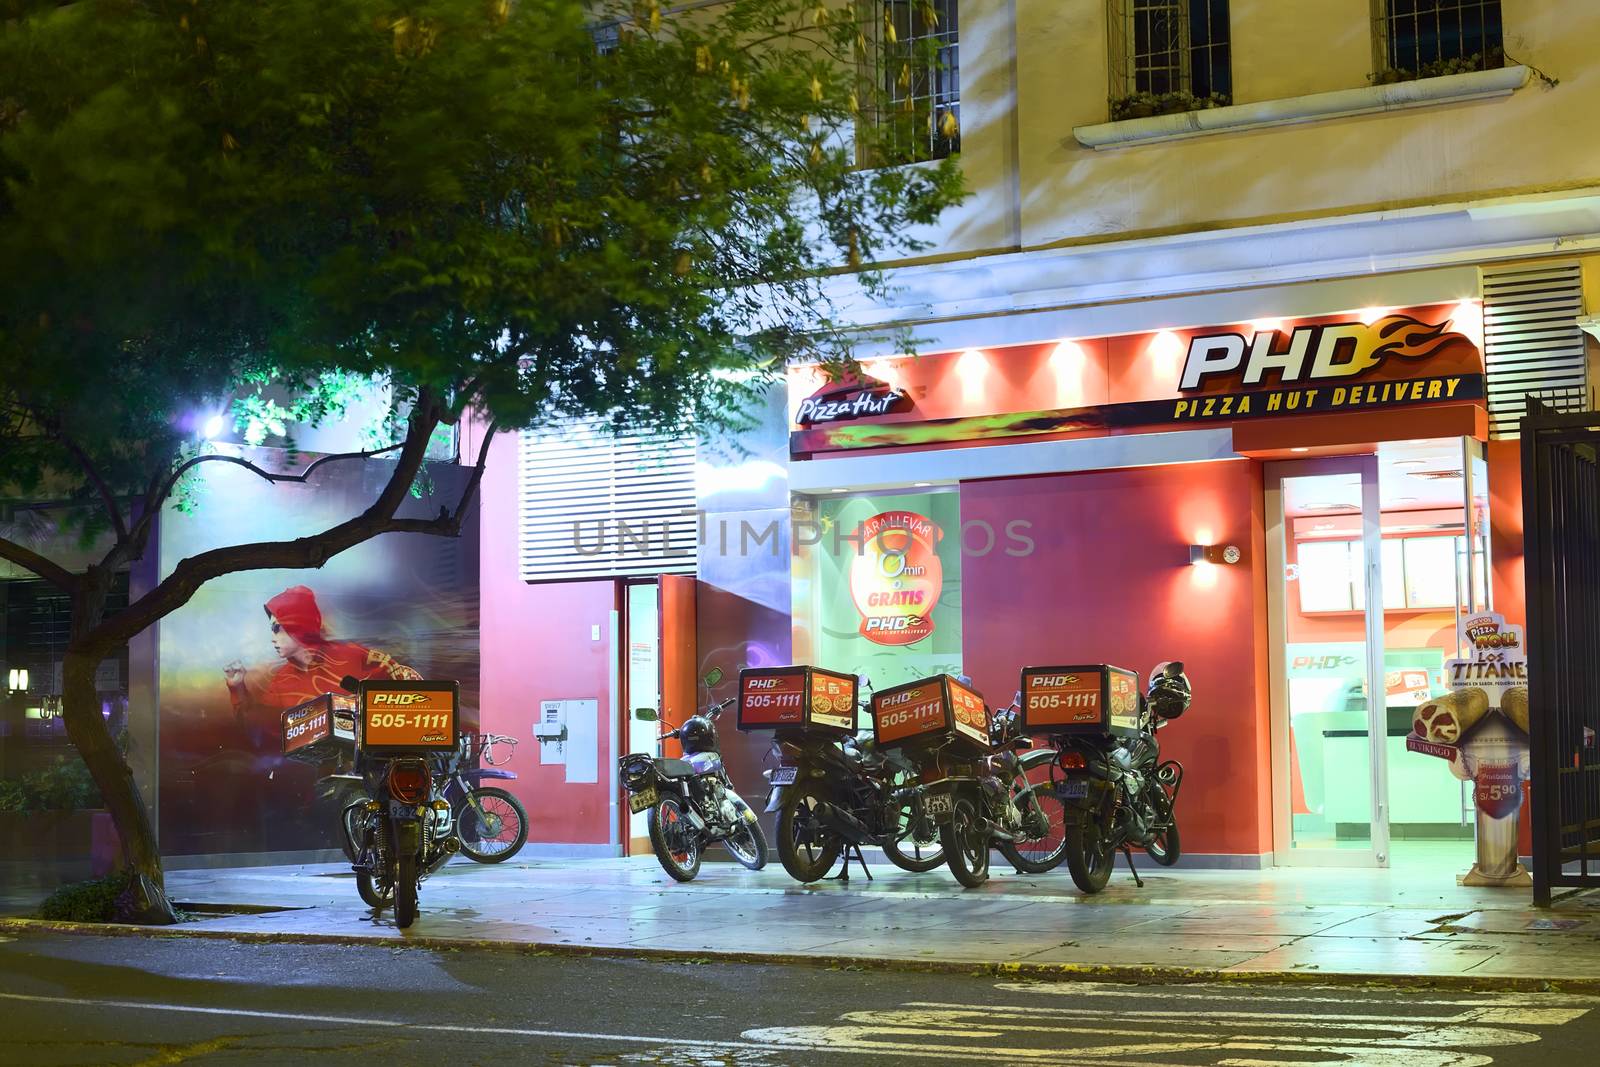 PHD Pizza Hut Delivery in Miraflores, Lima, Peru by ildi